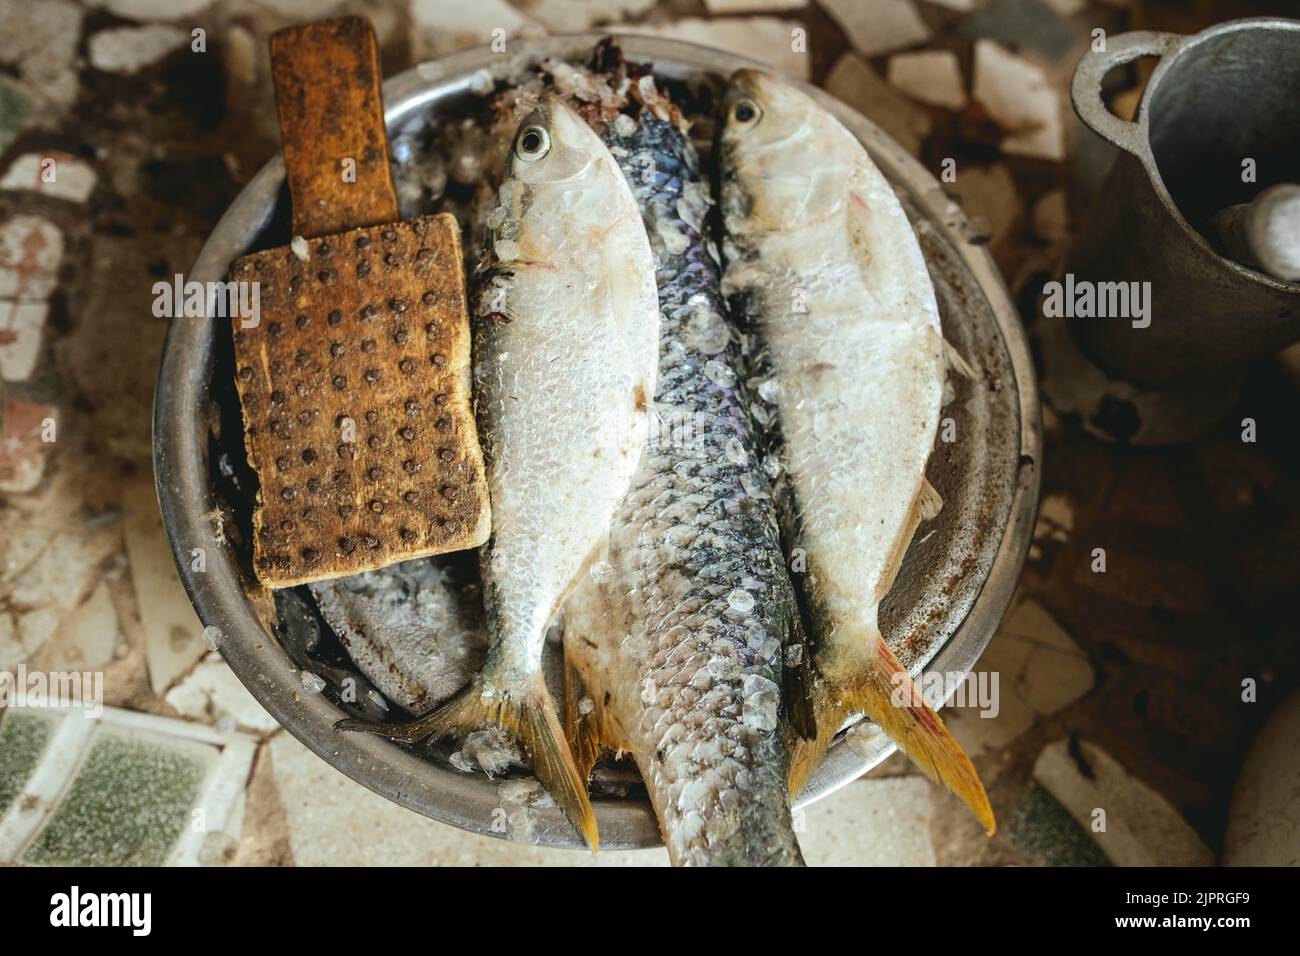 Zubereitung von Lebensmitteln für die Familie, Reis mit Fisch, das traditionelle Gericht der Fischer und Bewohner der Küstenregion, Nouamghar, Mauretanien Stockfoto